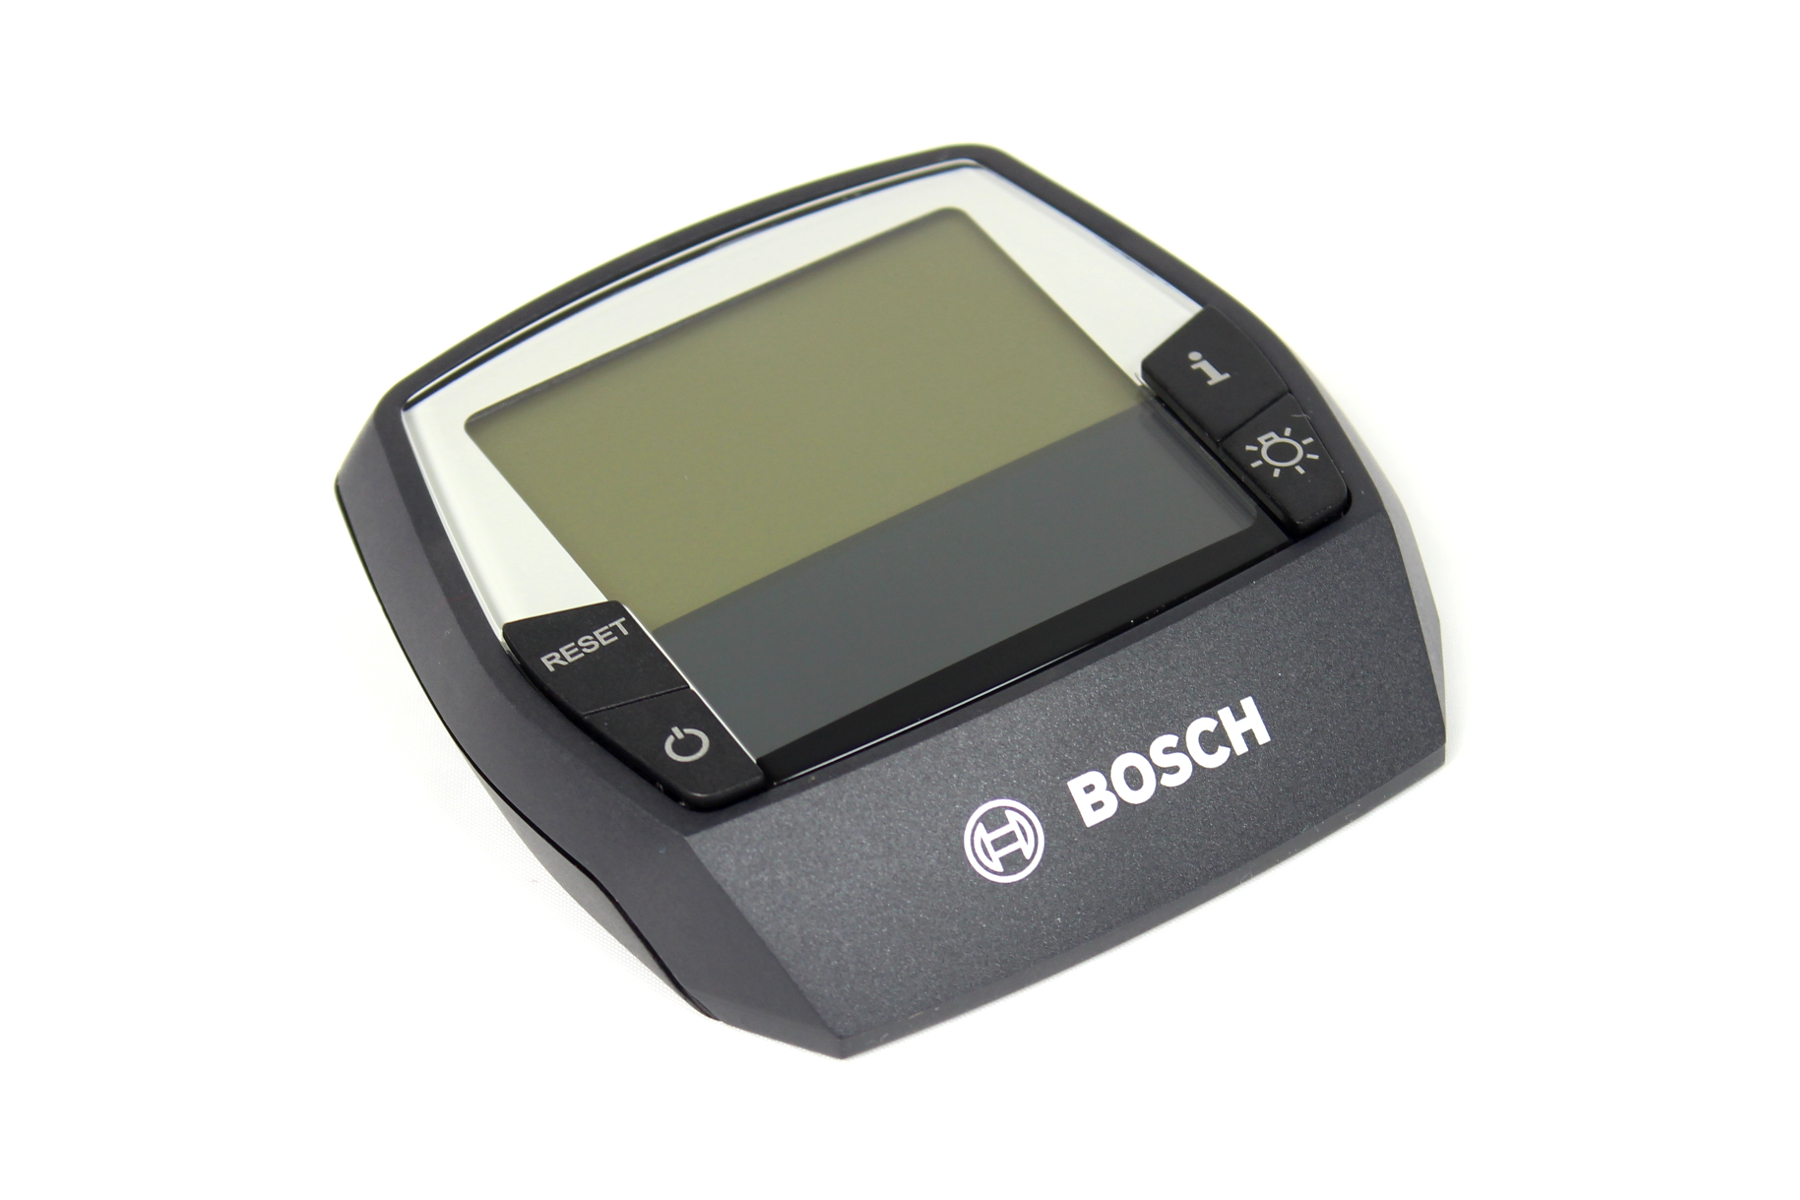 Bosch Intuvia E-bike Display Protector